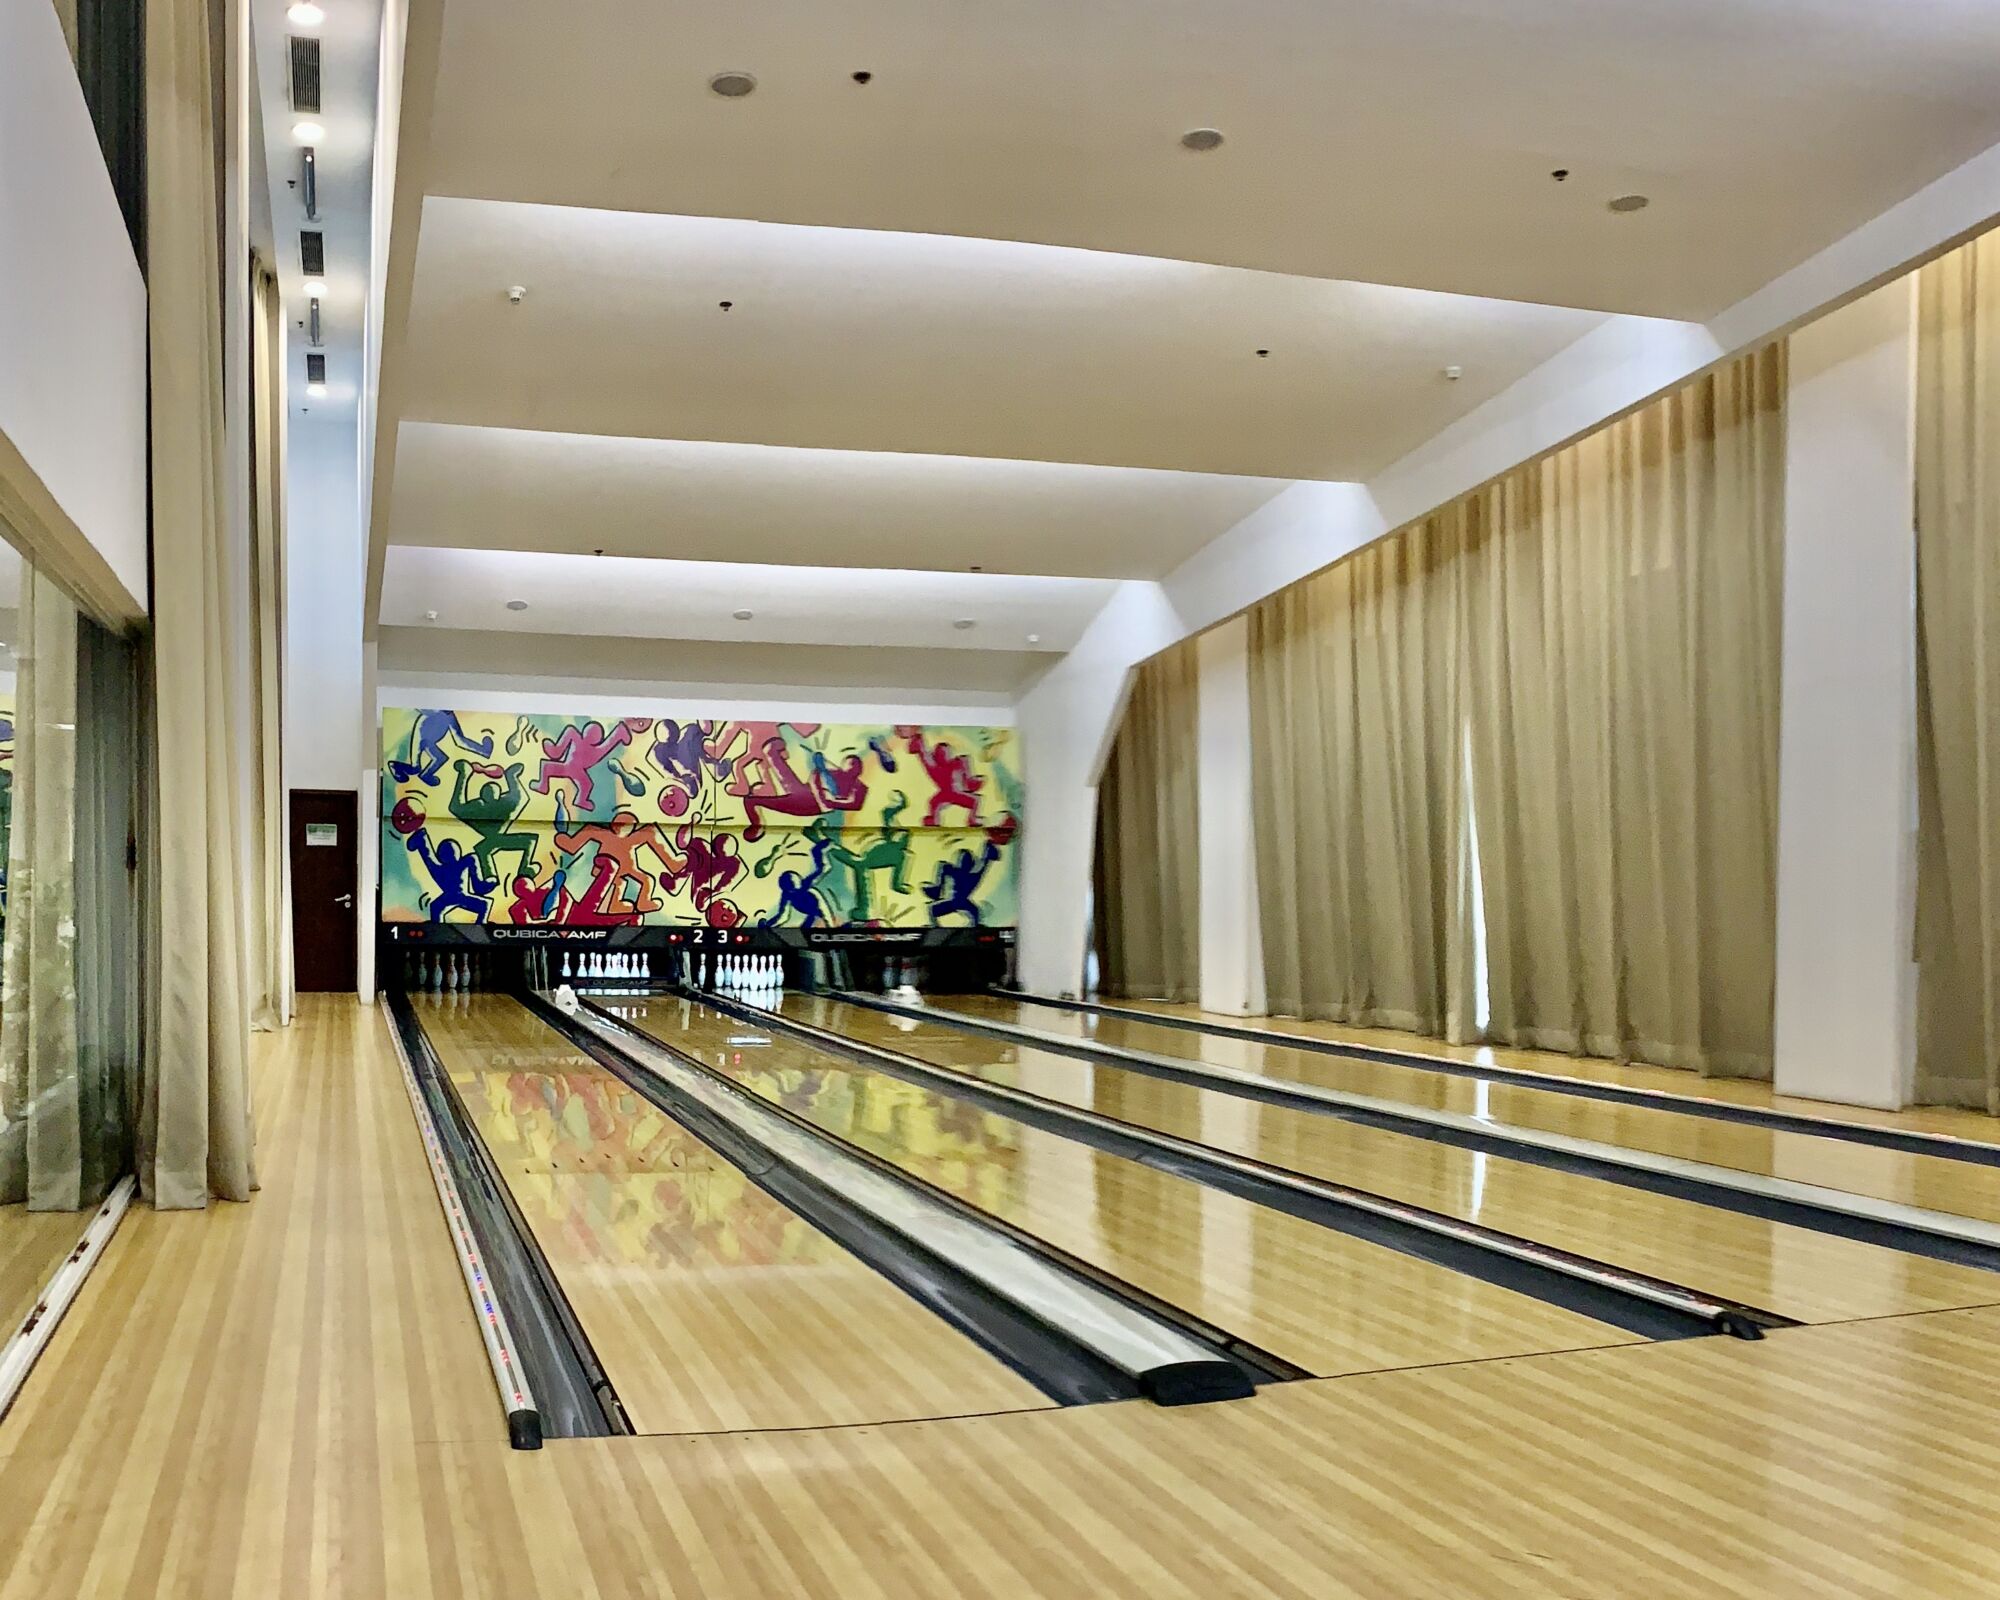 centro de actividades hipodromo juvenis youth centre indoor bowling alley lanes macau lifestyle